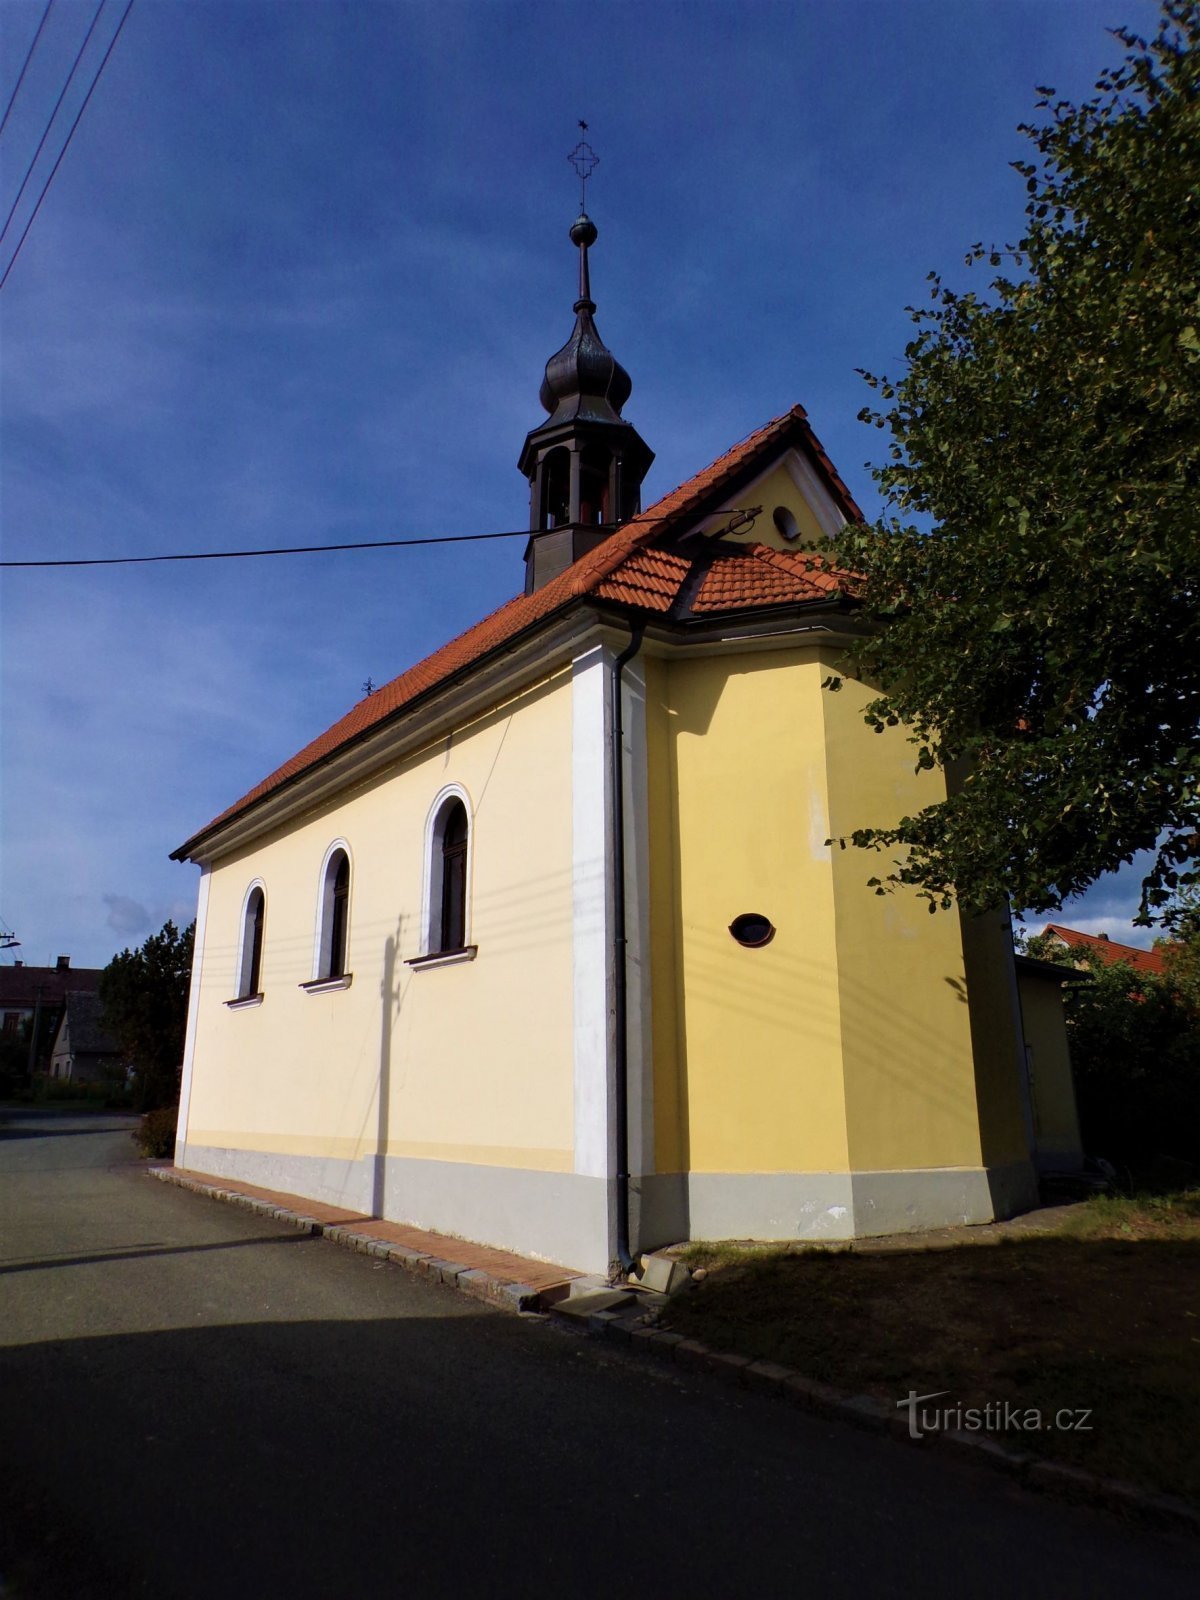 雪の聖母礼拝堂 (Žernov, 1.9.2021/XNUMX/XNUMX)